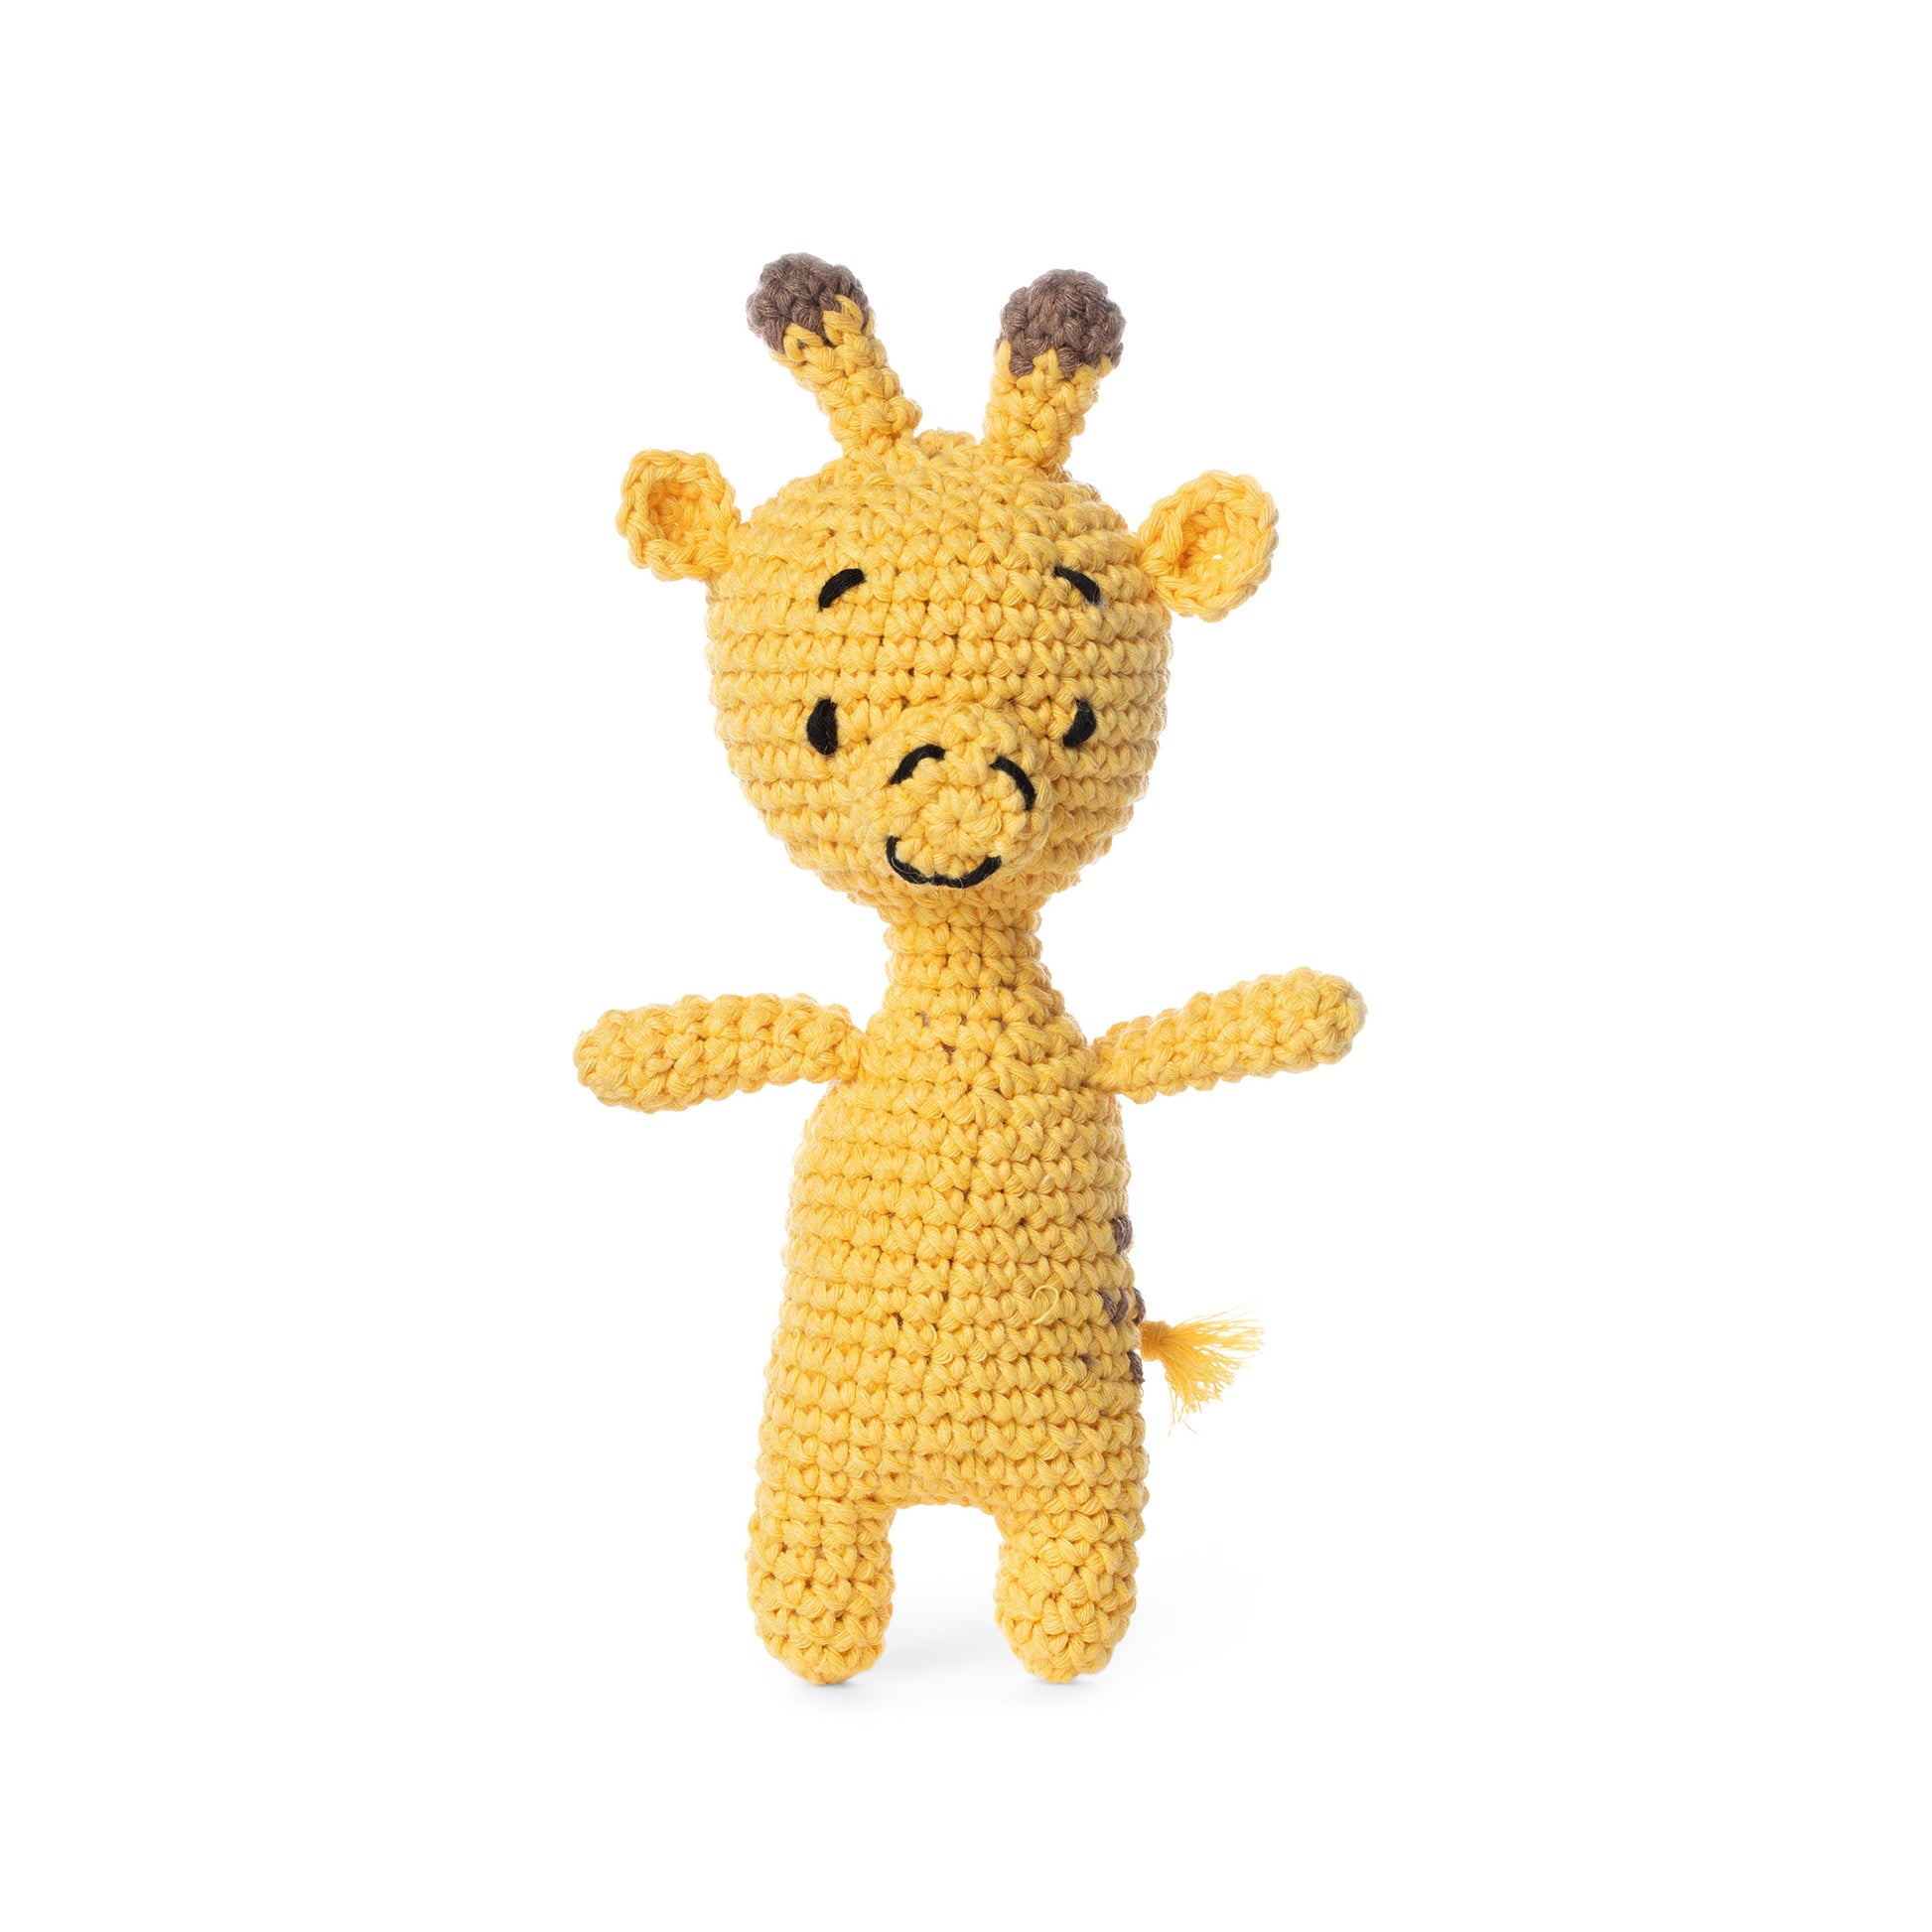 Little Crochet Giraffe - Red Heart Yarn